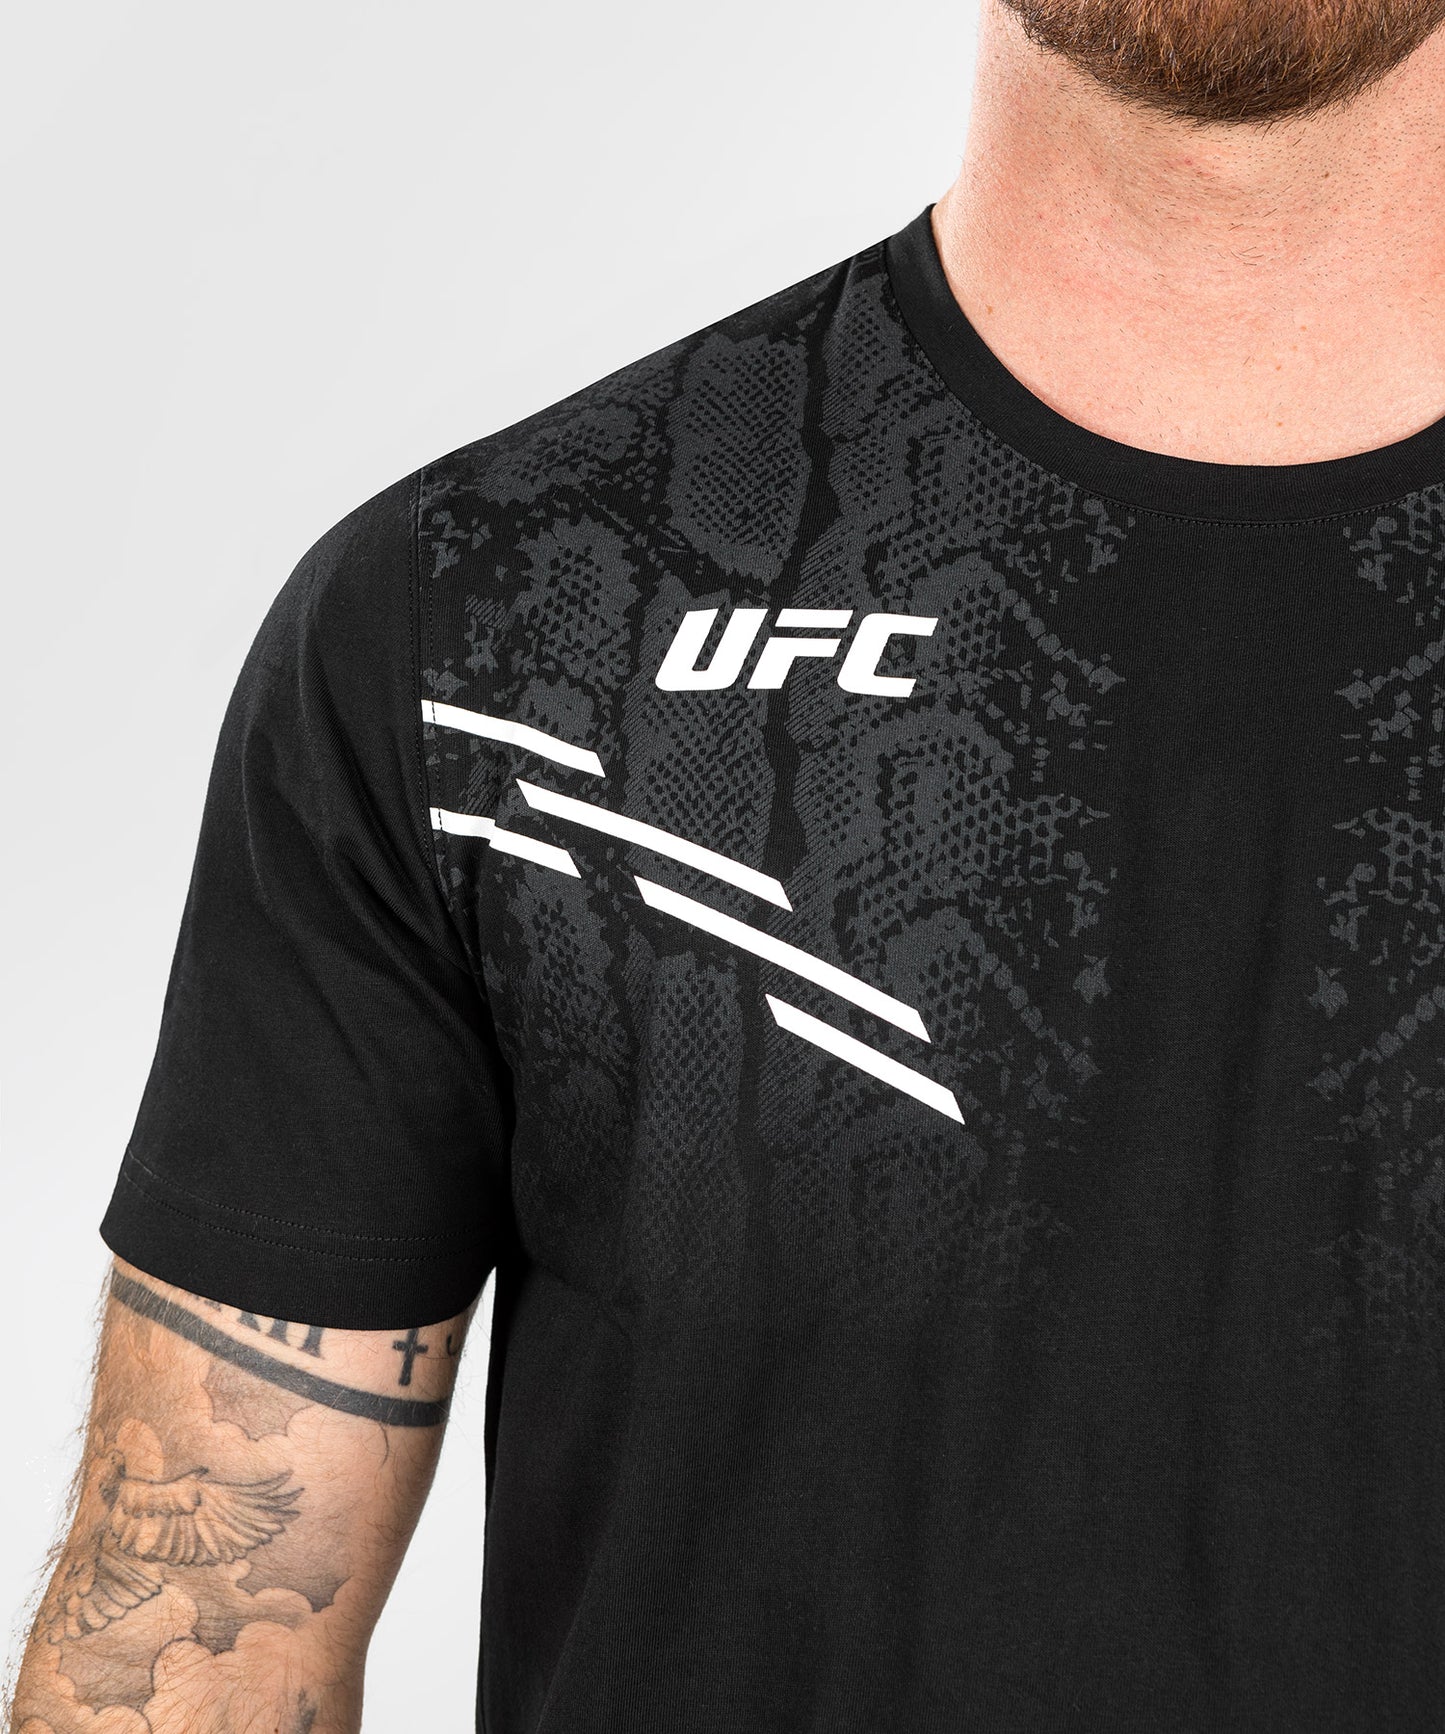 UFC Adrenaline by Venum Replica Camiseta de manga corta para Hombre - Negra